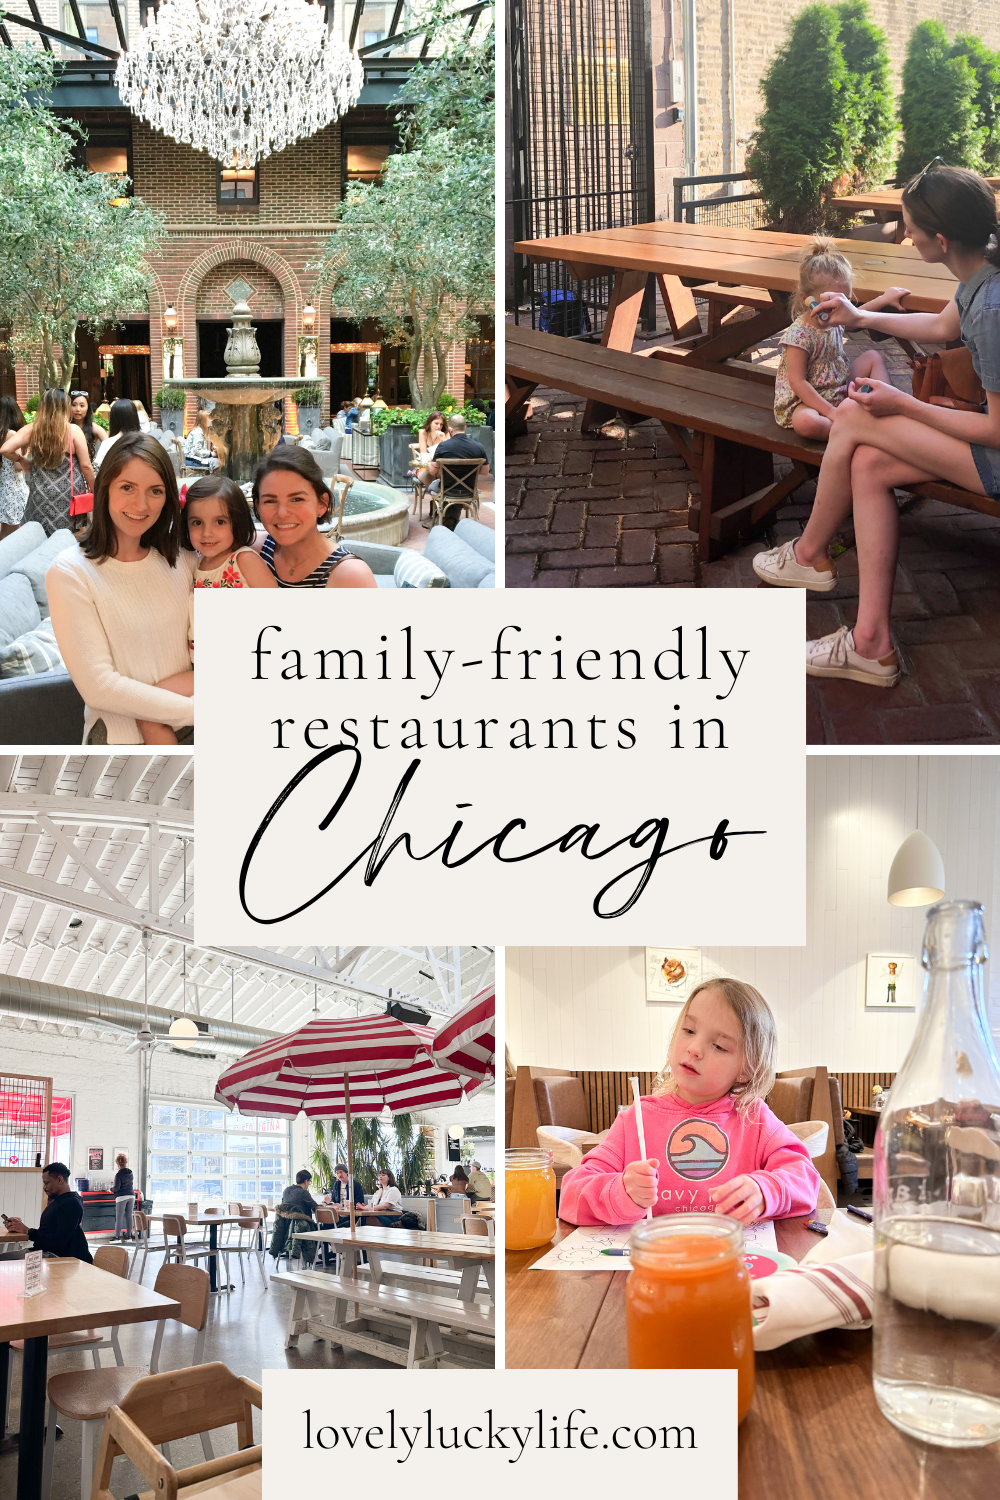 Family-Friendly Restaurants in Chicago from LovelyLuckyLife